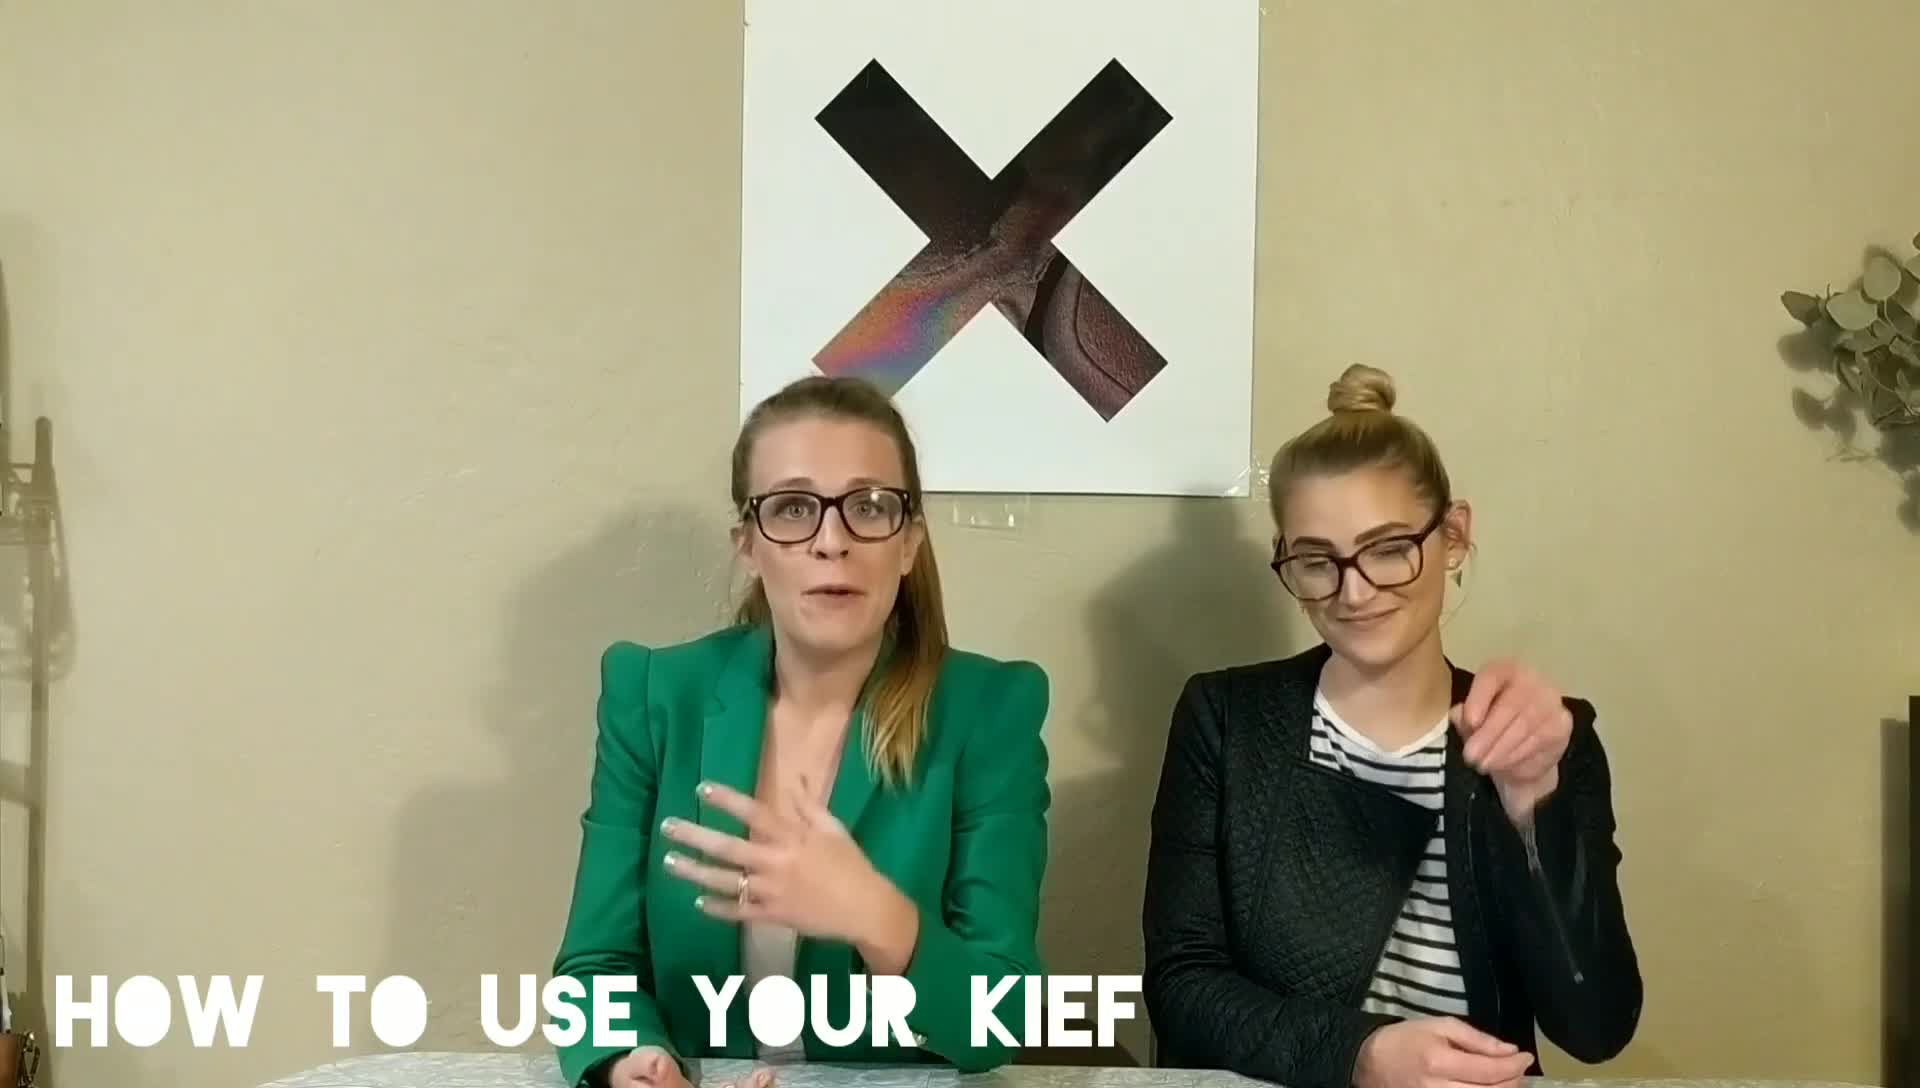 How to use a kief? Charlotte and Baylie talk